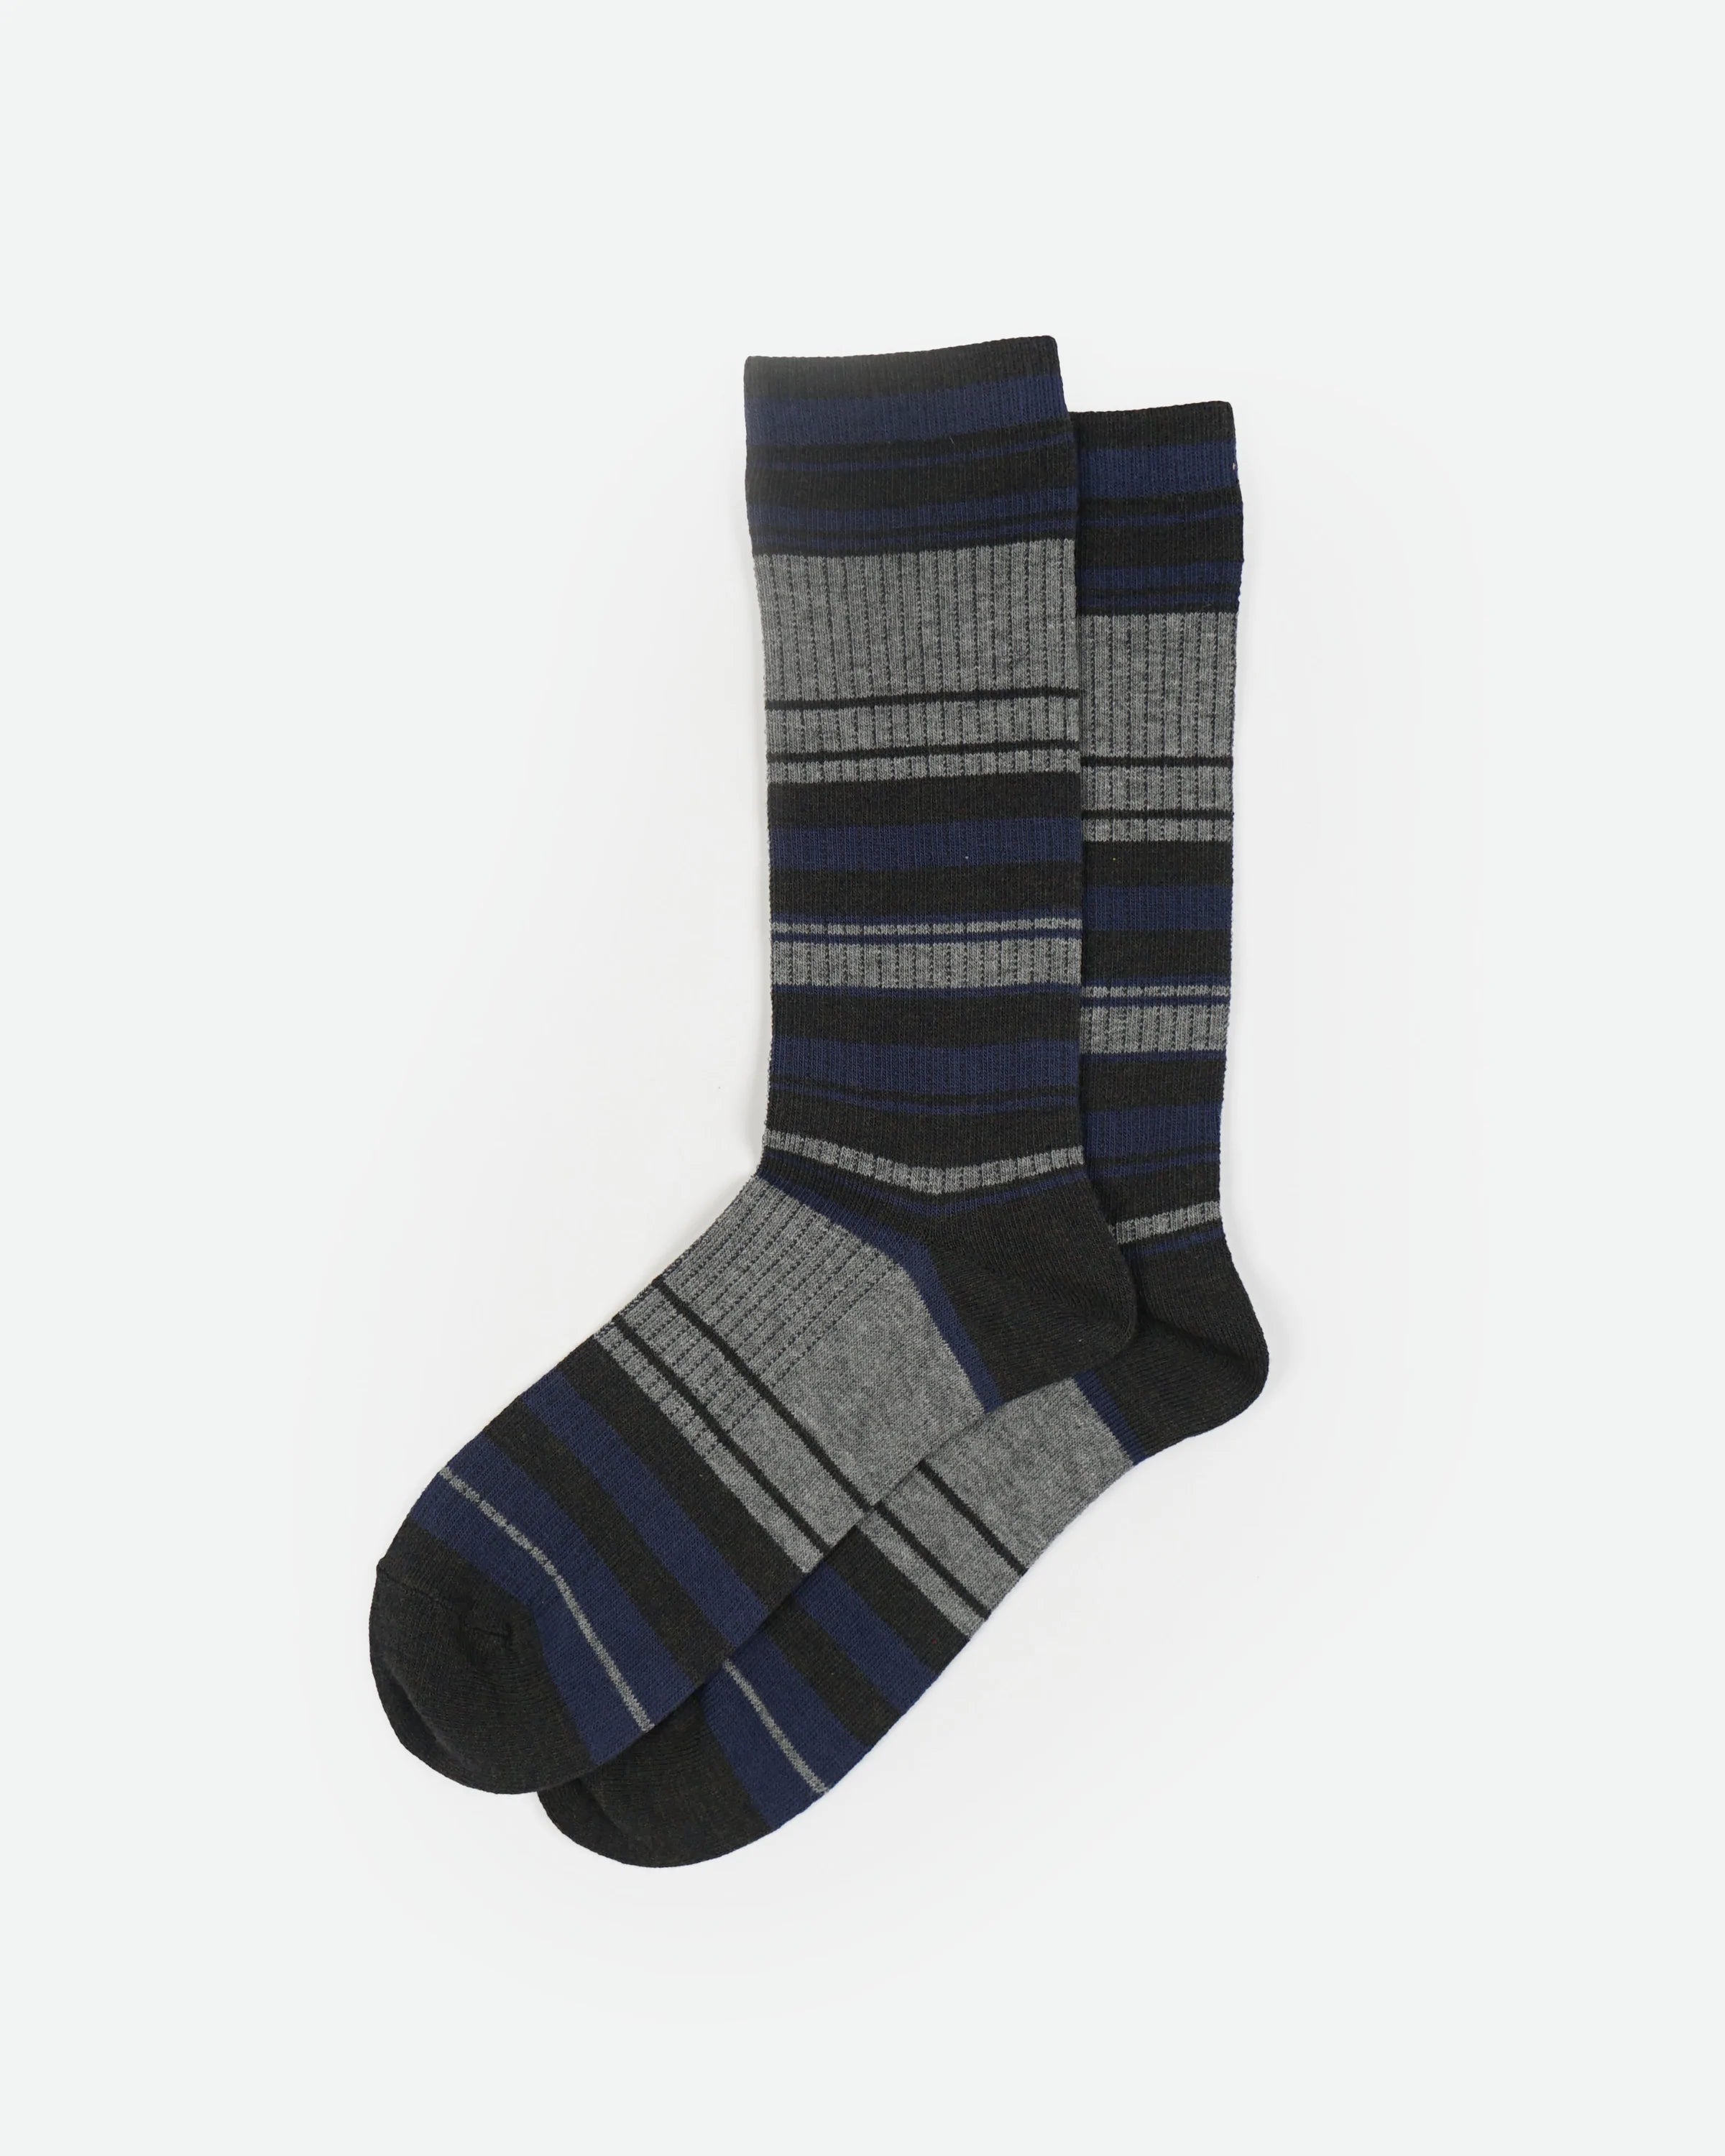 Multicolor Striped Socks / Gray x Navy x Black